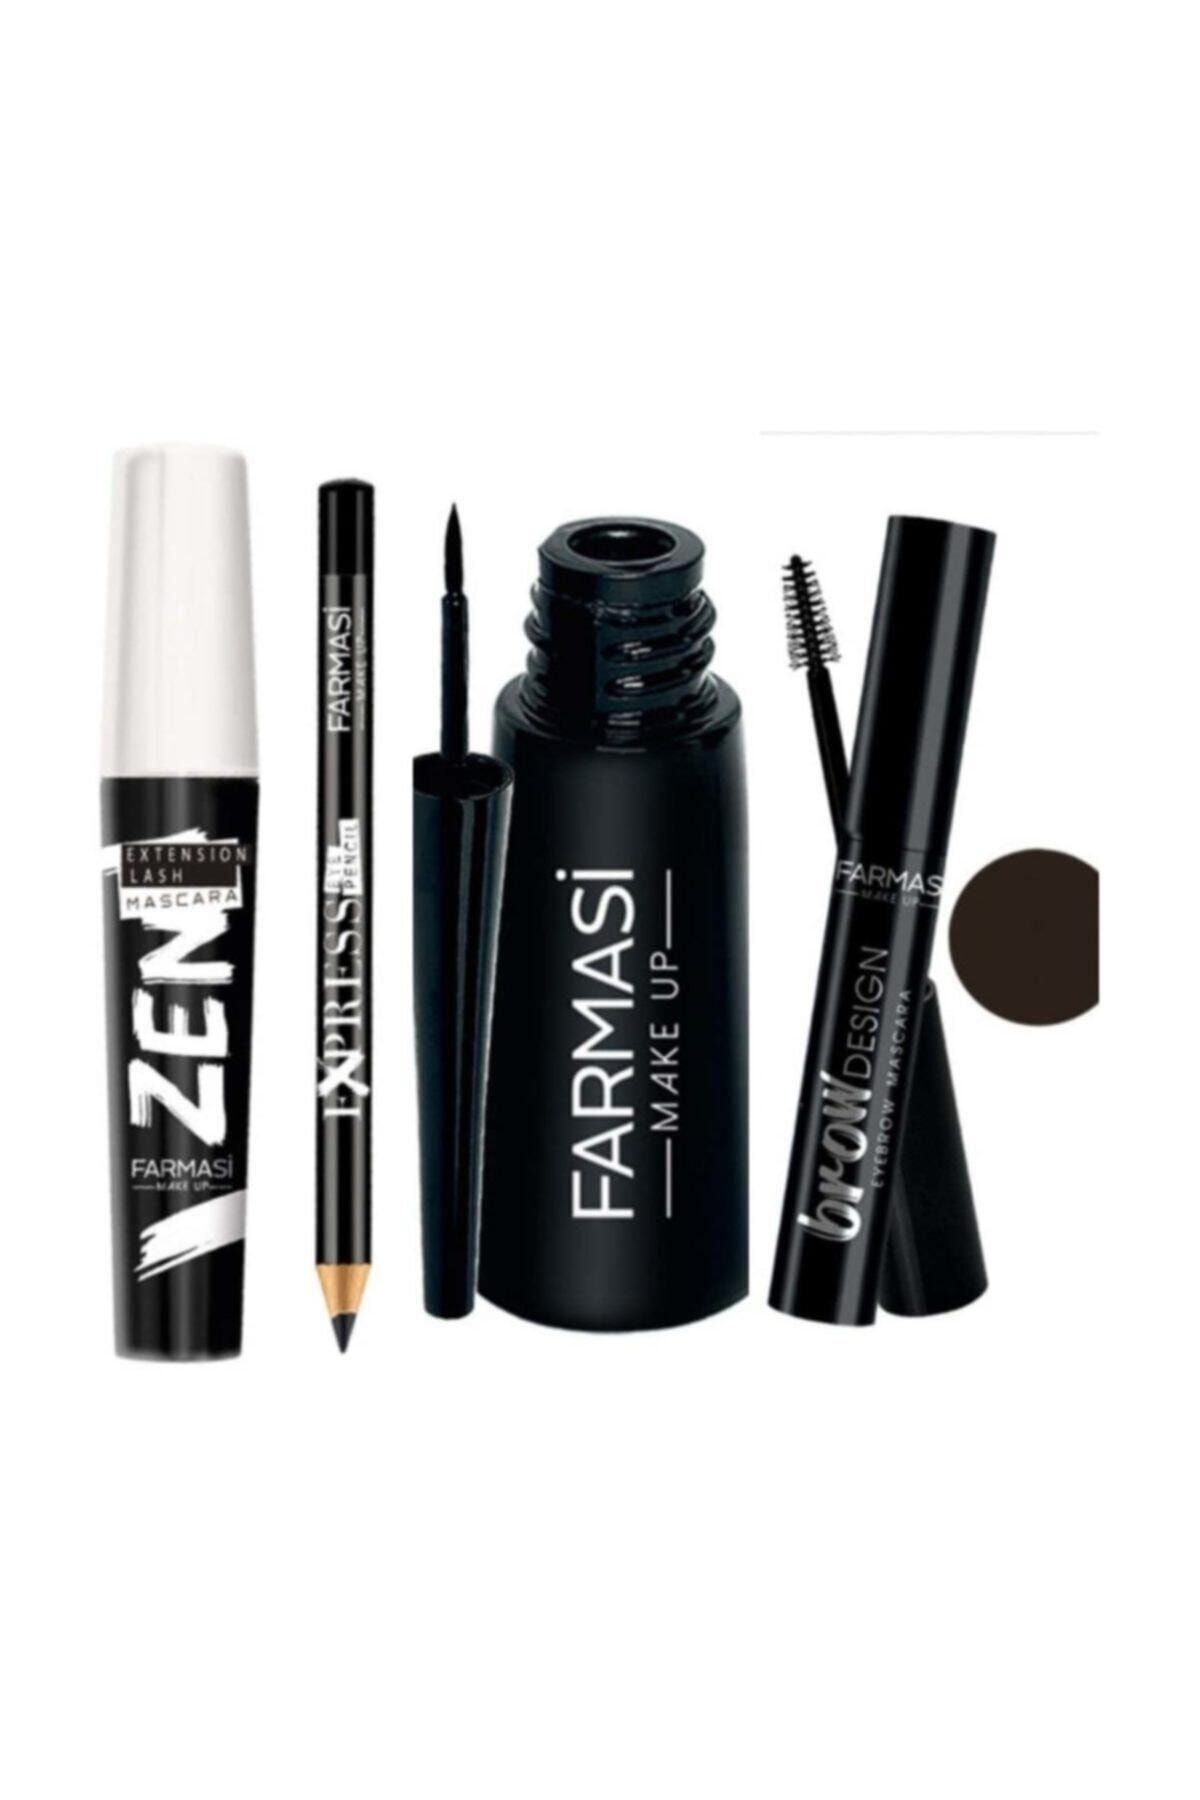 Farmasi Zen Maskara + Kalın Uçlu Eyeliner + Siyah Göz Kalemi + Koyu Kahve Kaş Maskarası  Makyaj Seti